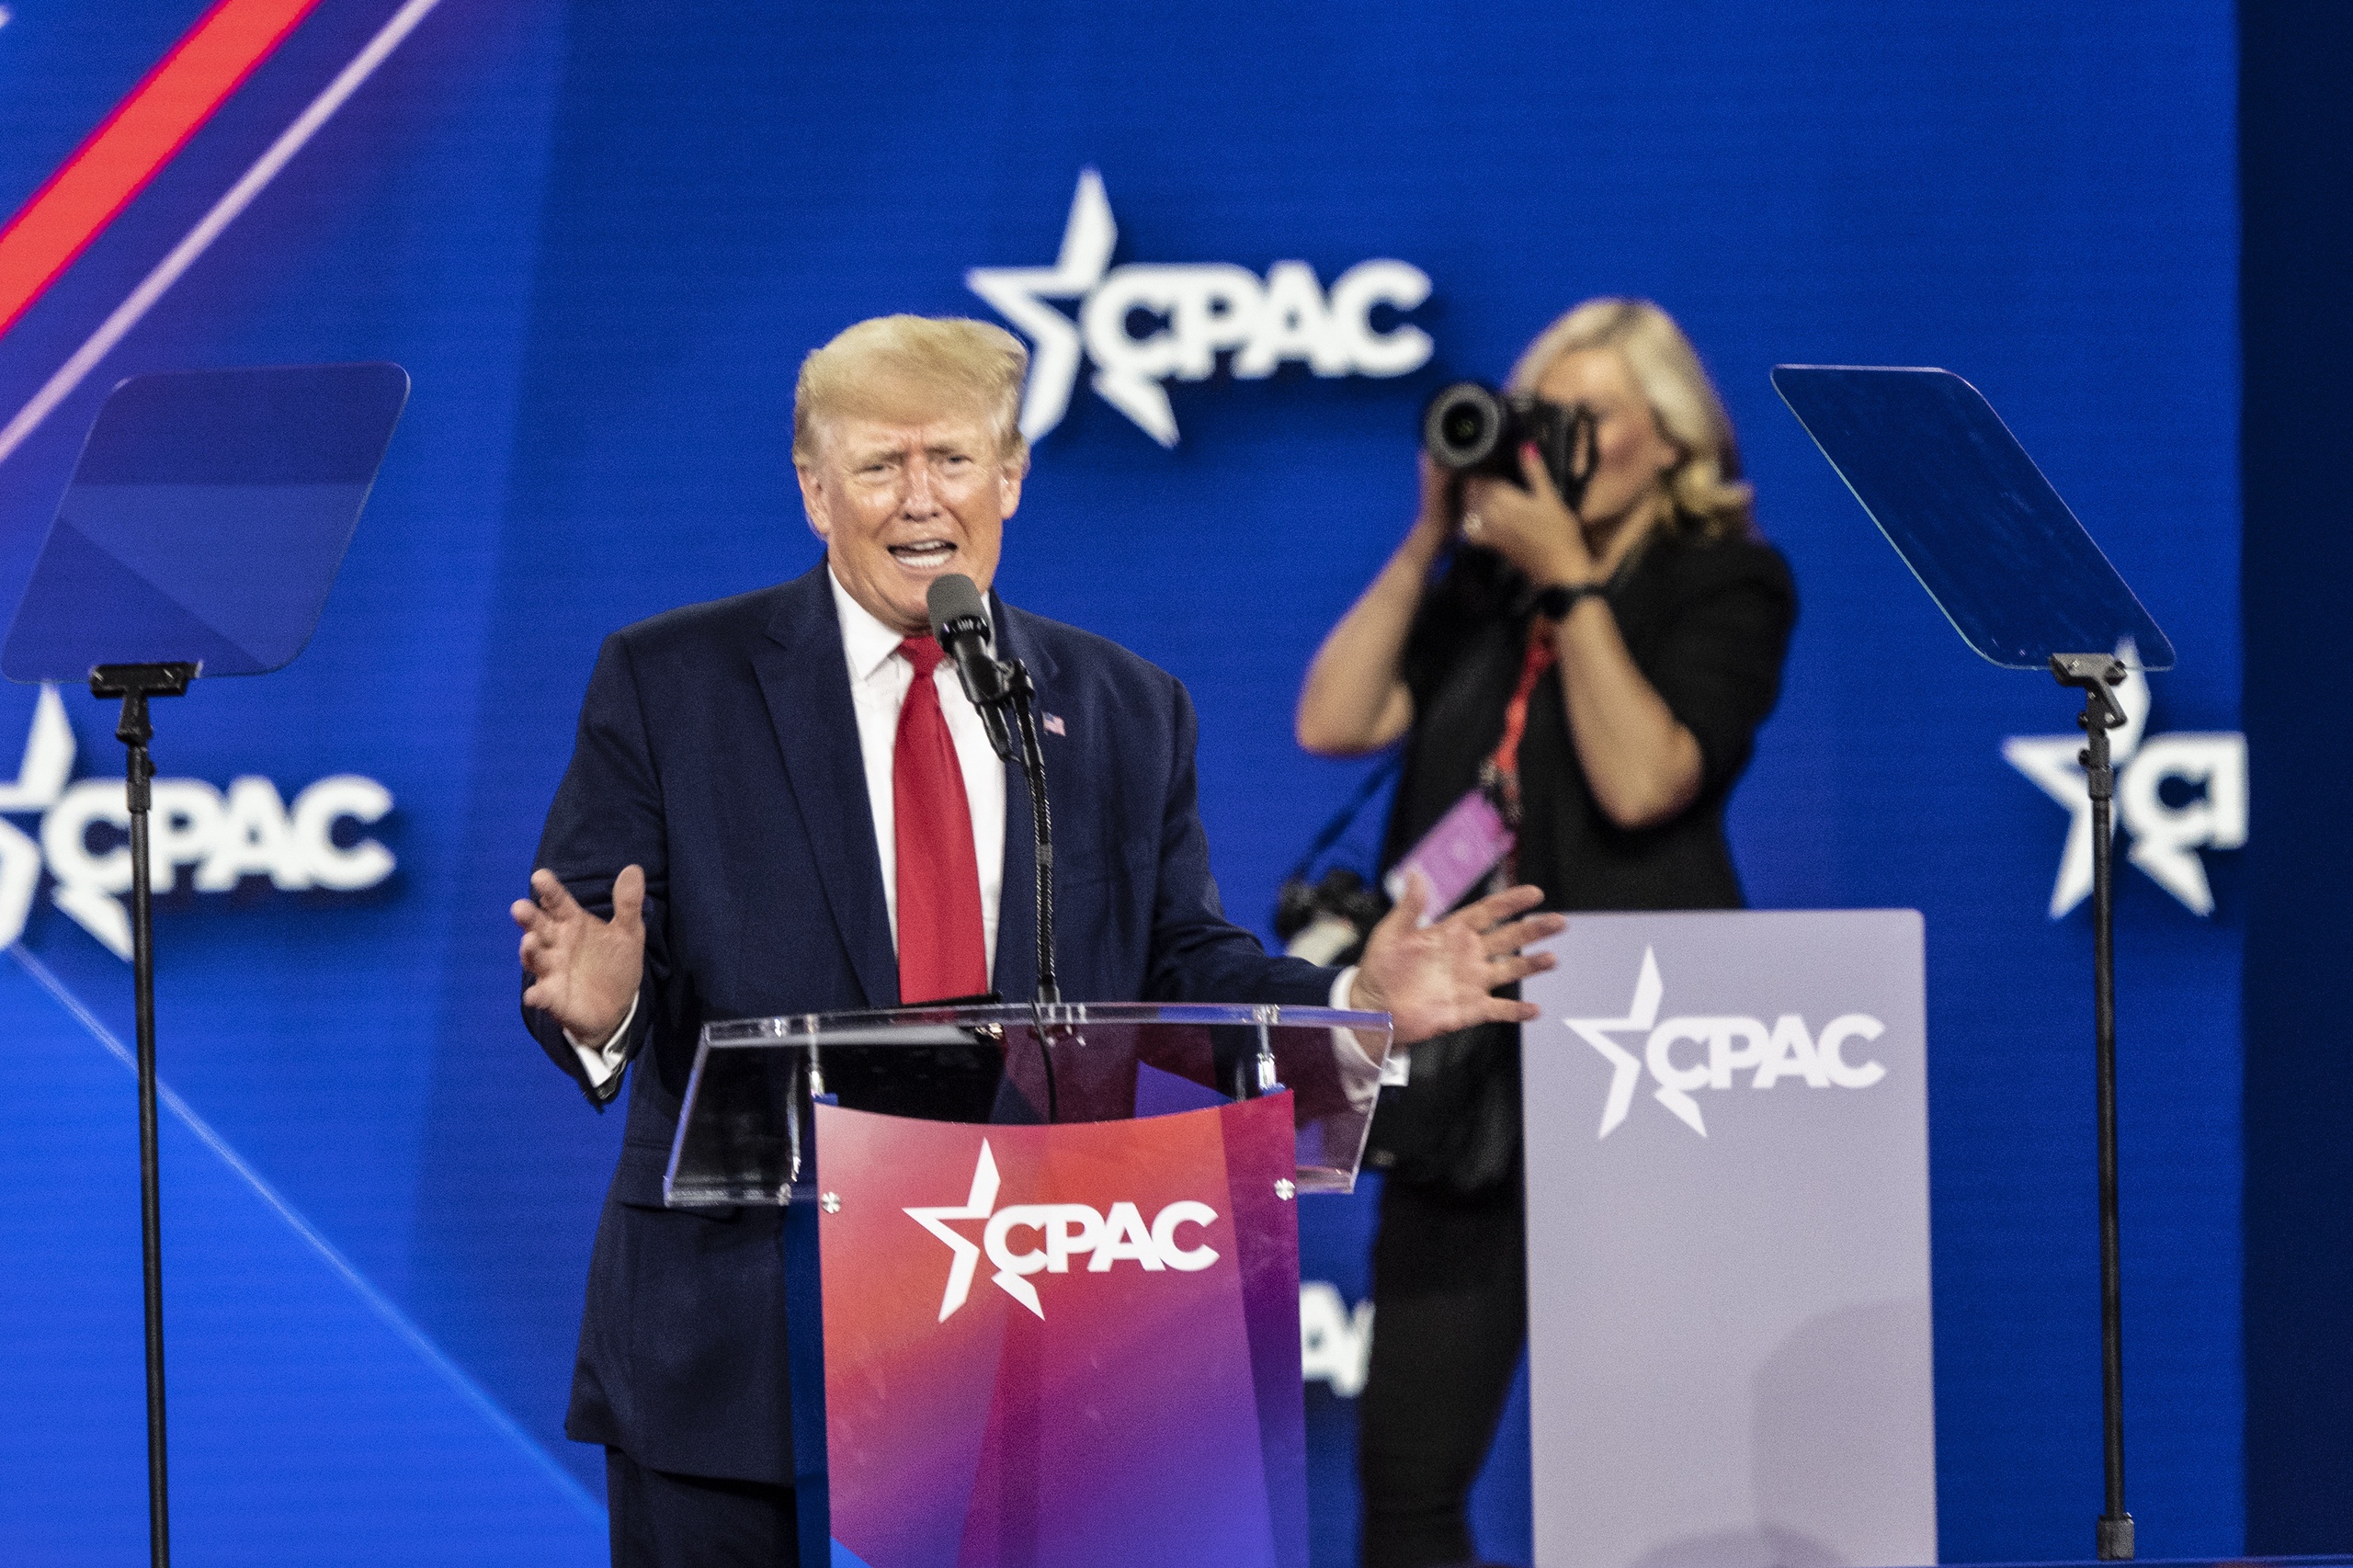 45e president van de VS Donald J. Trump spreekt tijdens CPAC Texas 2022-conferentie in Hilton Anatole